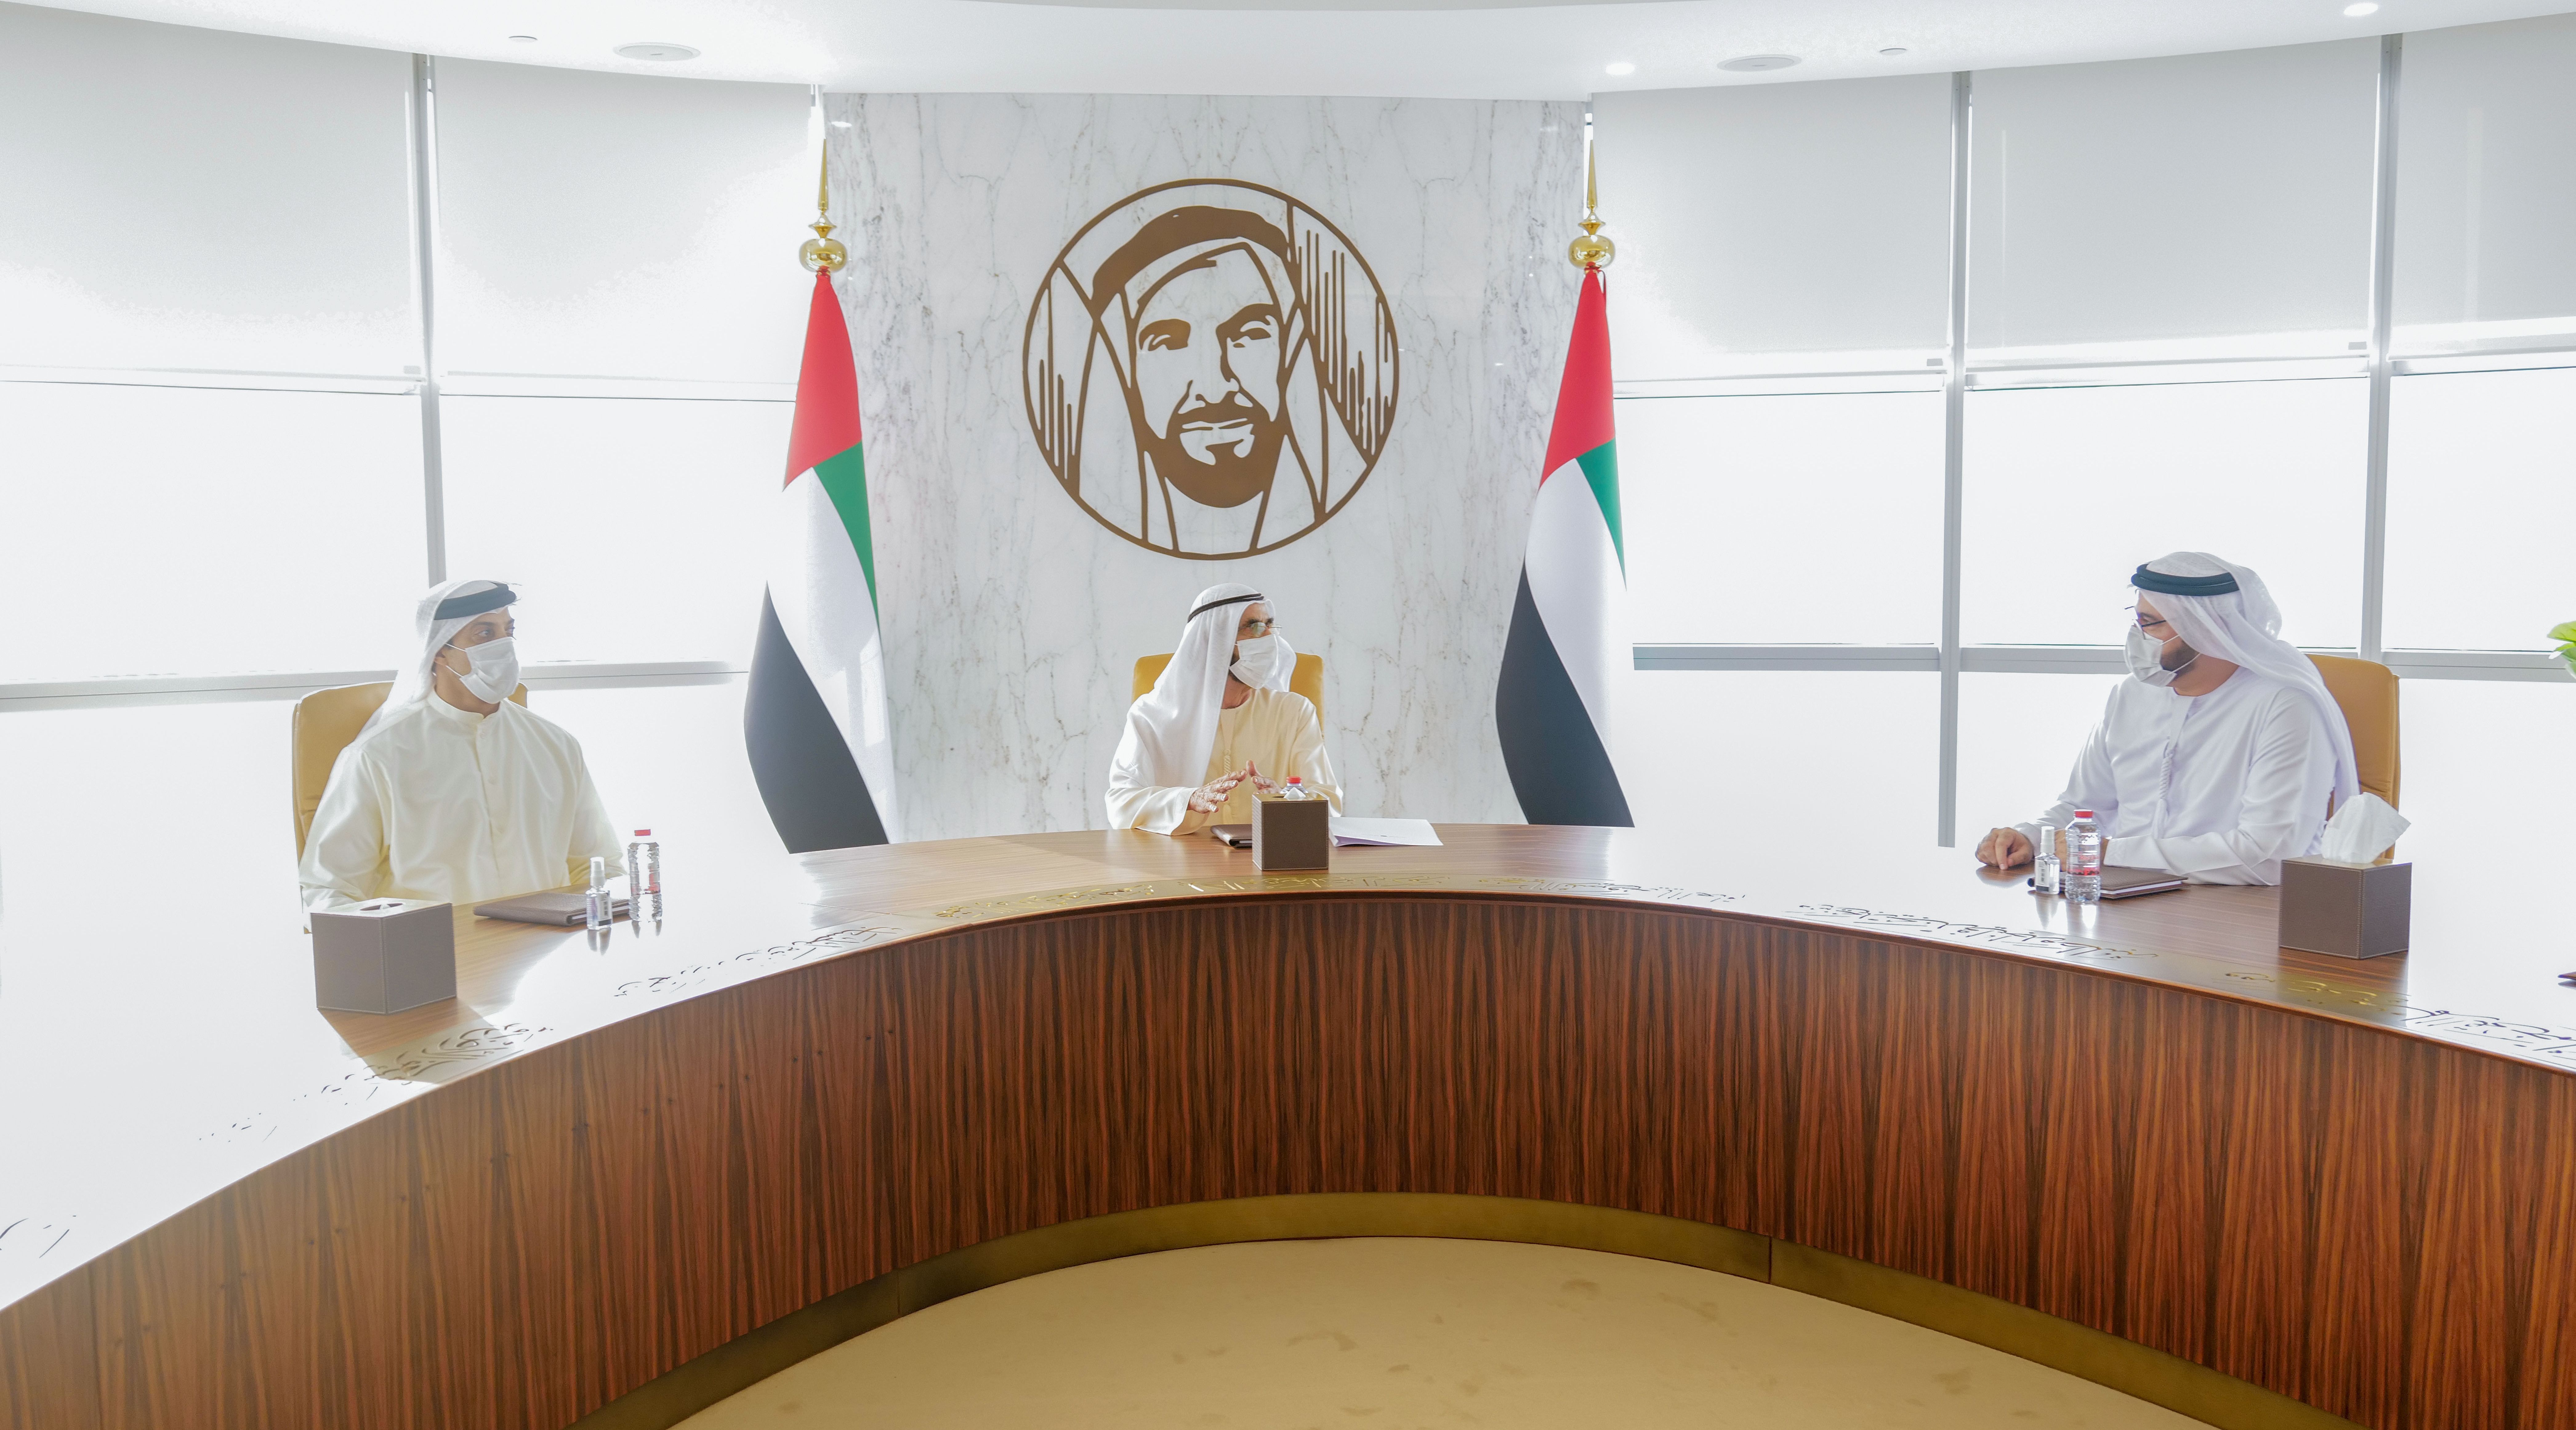 ابوظہبی ایمرجنسی ، کرائسز اینڈ ڈیزاسٹر کمیٹی نے اعلان کیا ہے کہ اس نے امارات میں داخل ہونے کے لئے دو ٹیسٹوں کی منظوری دی ہے